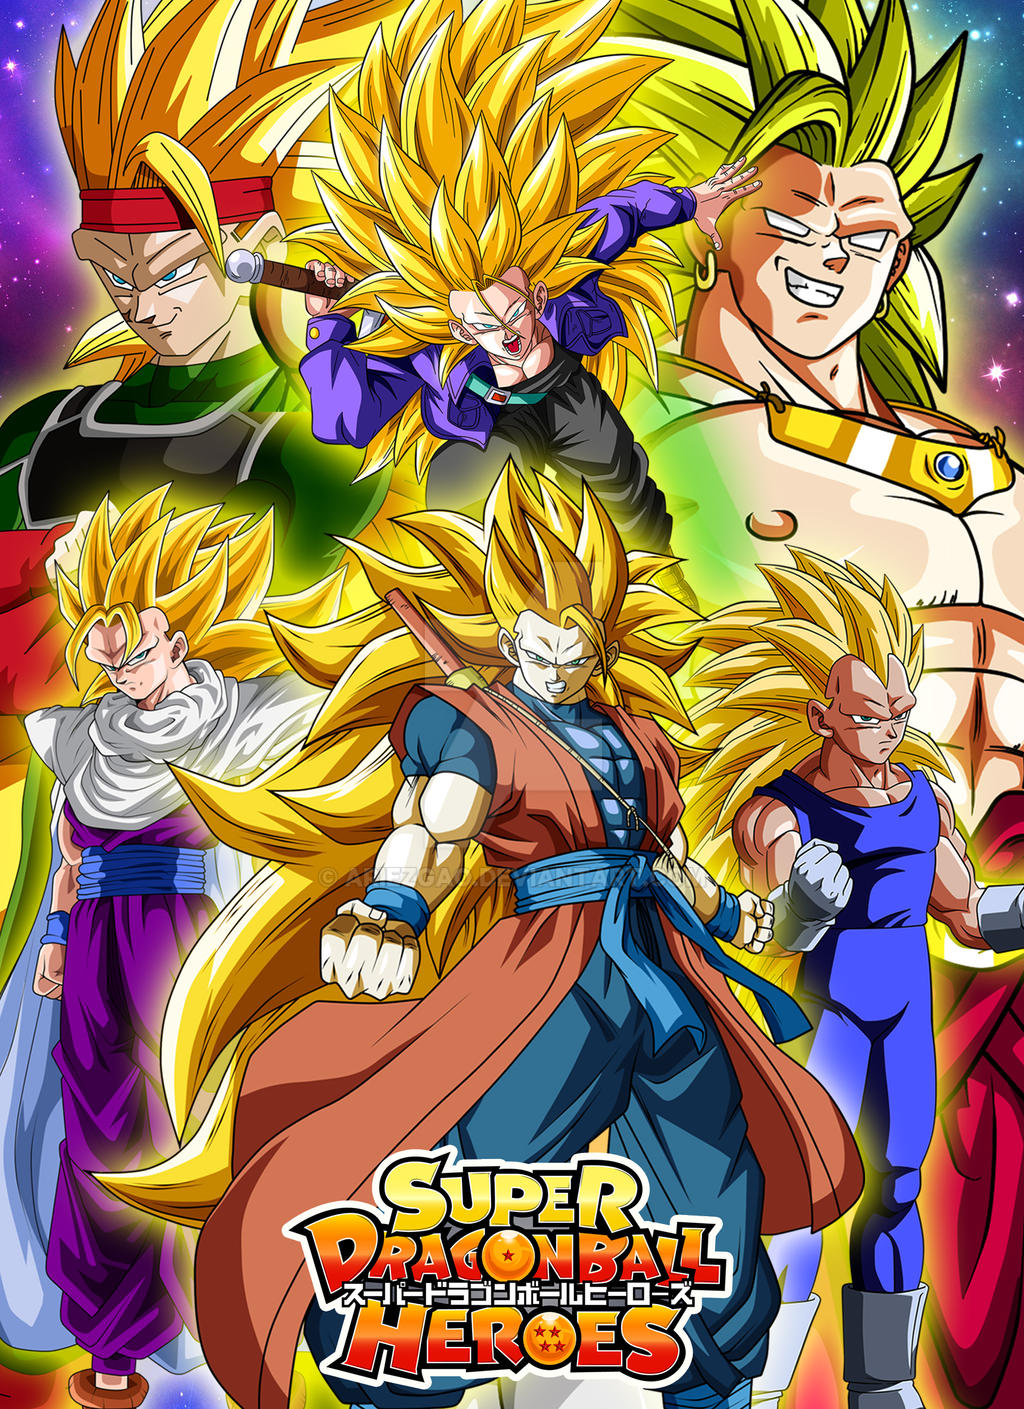 Super Saiyan 3 Goku (Ascended) by MegaforceRed on DeviantArt